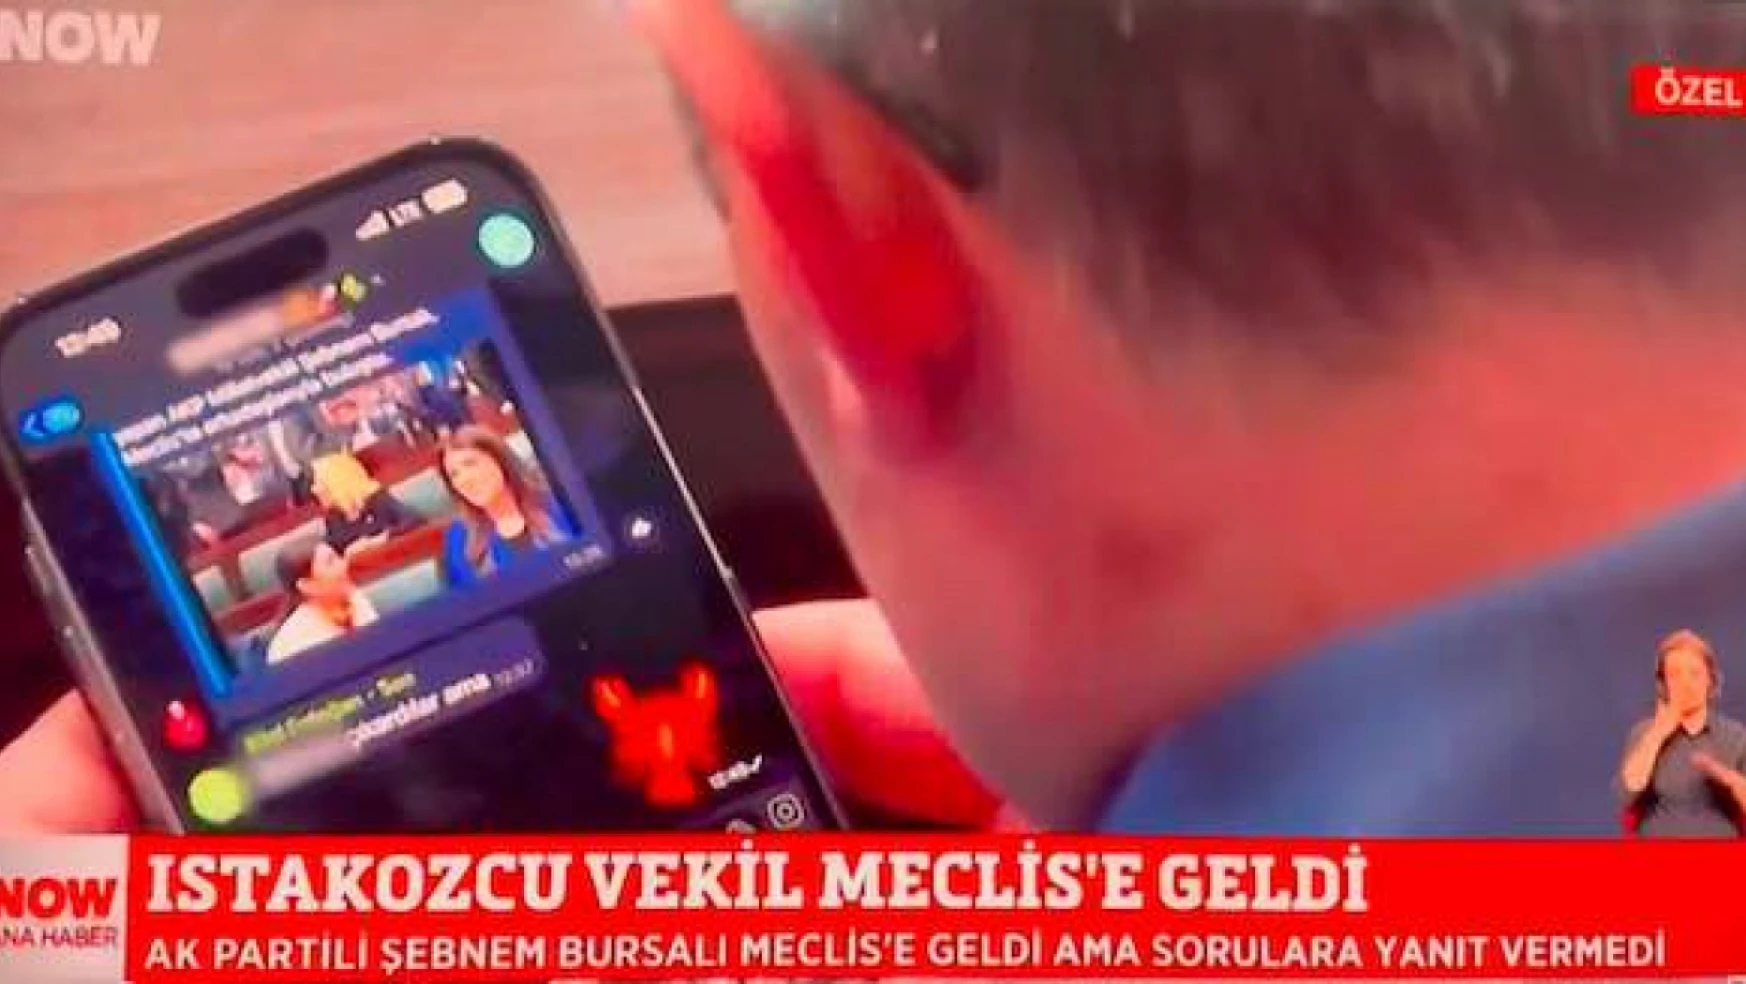 AK Parti Grubu'nda Varank ile Bilal Erdoğan arasında 'ıstakoz' emojili yazışma